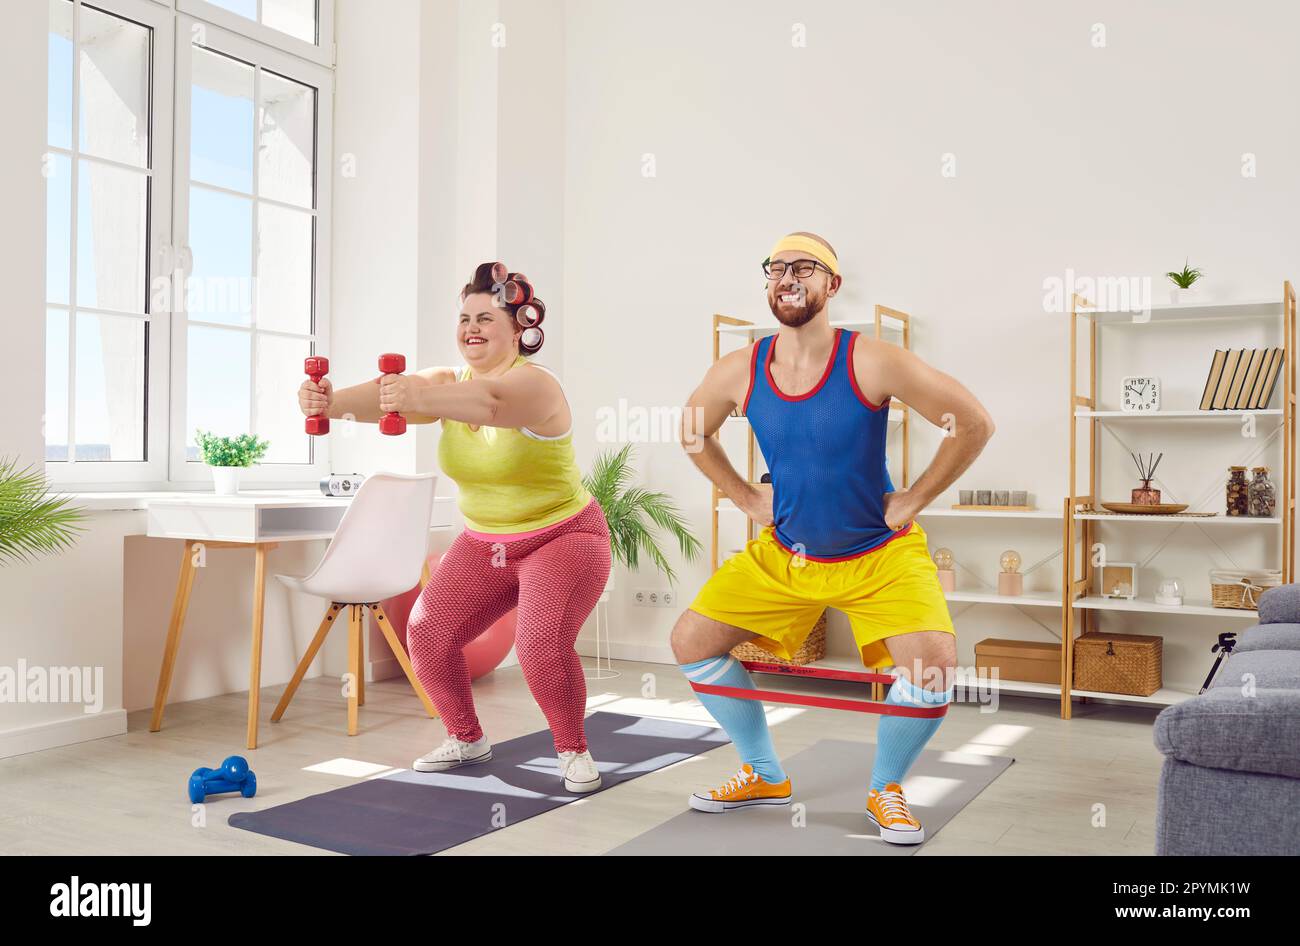 Donna grassa sovrappeso con uomo bearded divertente in sportswear luminoso che fa le esercitazioni nel paese insieme. Foto Stock